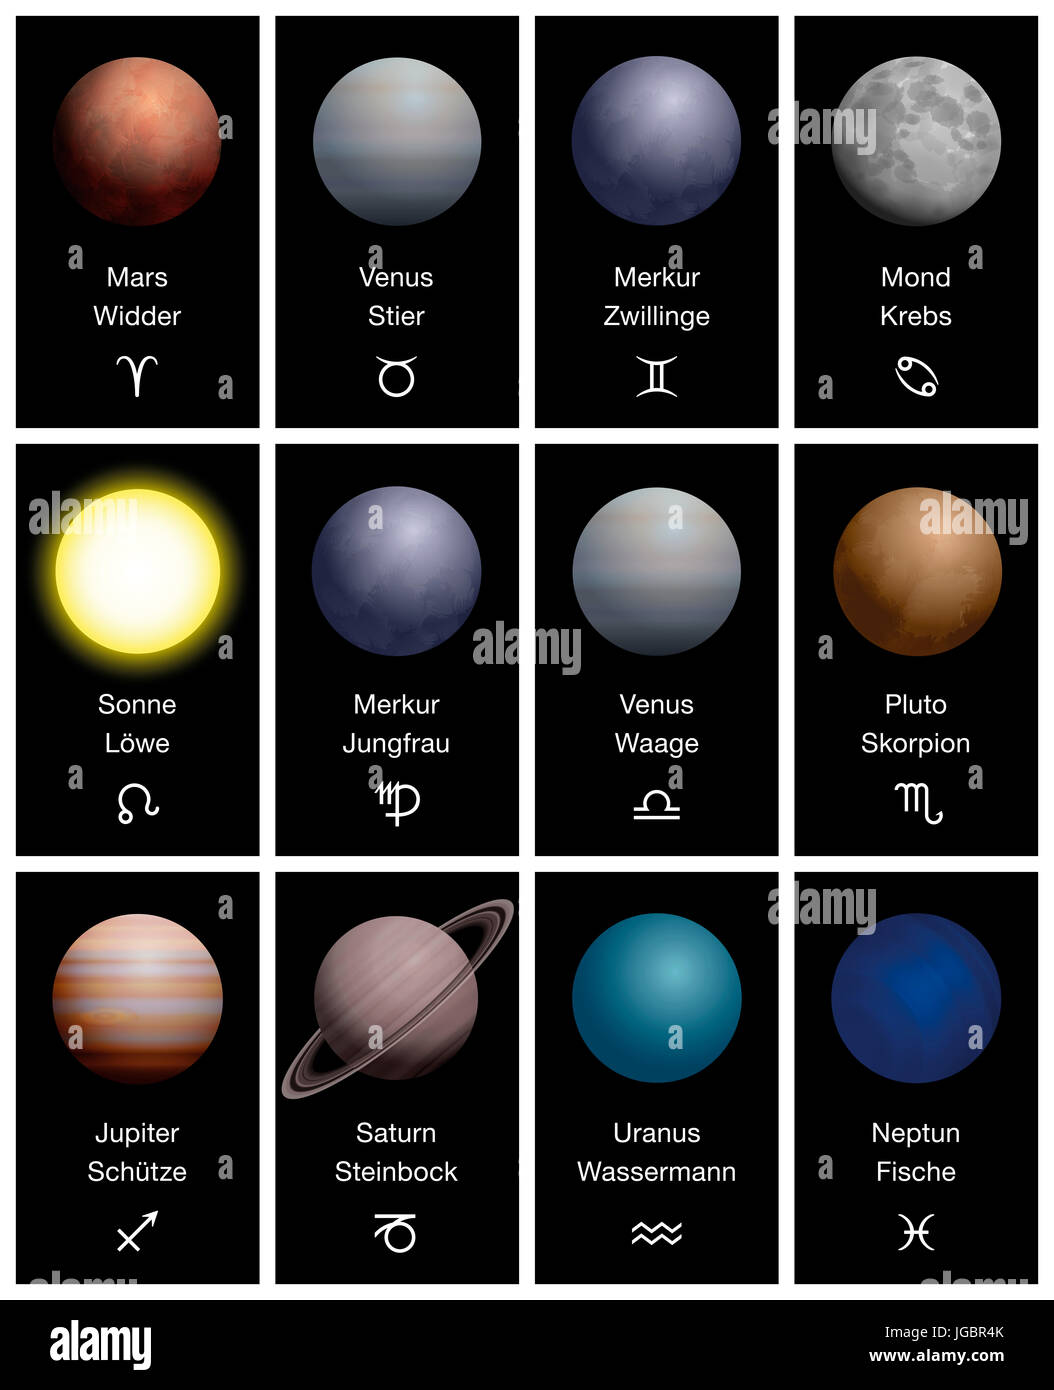 Segni zodiacali con pianeti realistici, più corrispondenti nomi e simboli - nomi tedeschi - Astrologia e astronomia combinati. Foto Stock